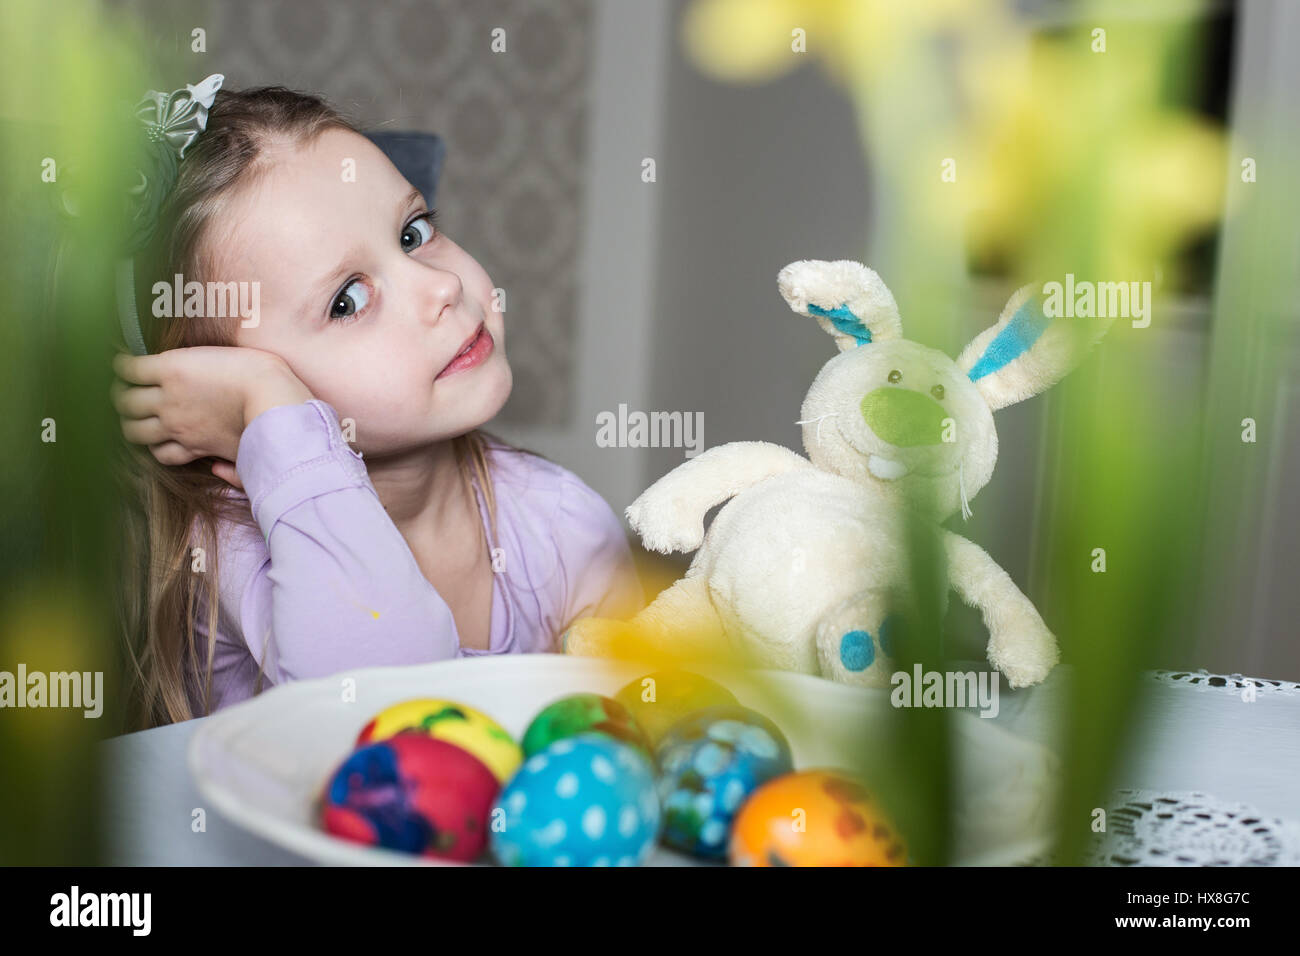 Nettes Kind mit Ostereiern und Plüsch Hase lächelnd. Ostern. Ostern, Urlaub und Kind Konzept Stockfoto